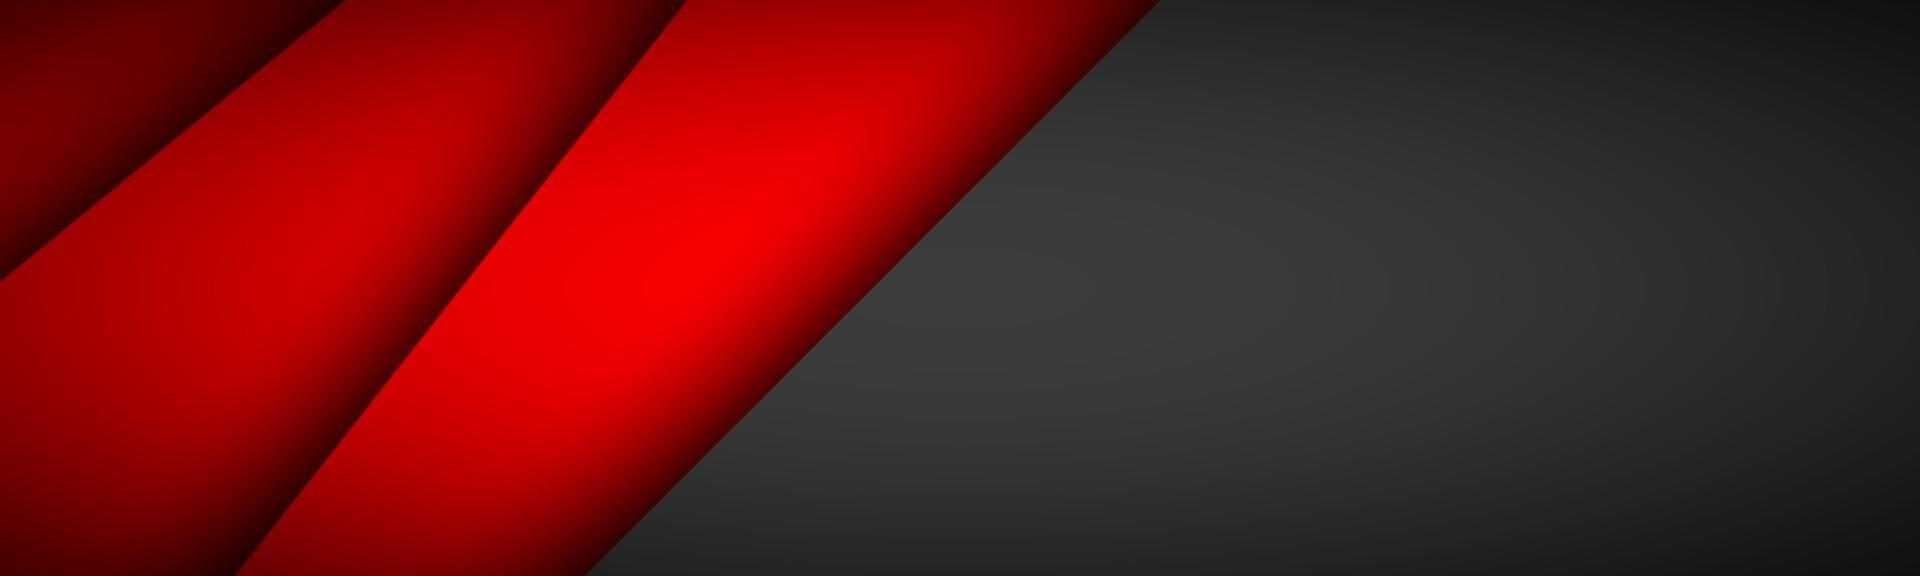 sovrapposizione rossa strati di carta intestazione con spazio vuoto nero per il testo banner di progettazione materiale moderno illustrazione vettoriale modello aziendale sfondo